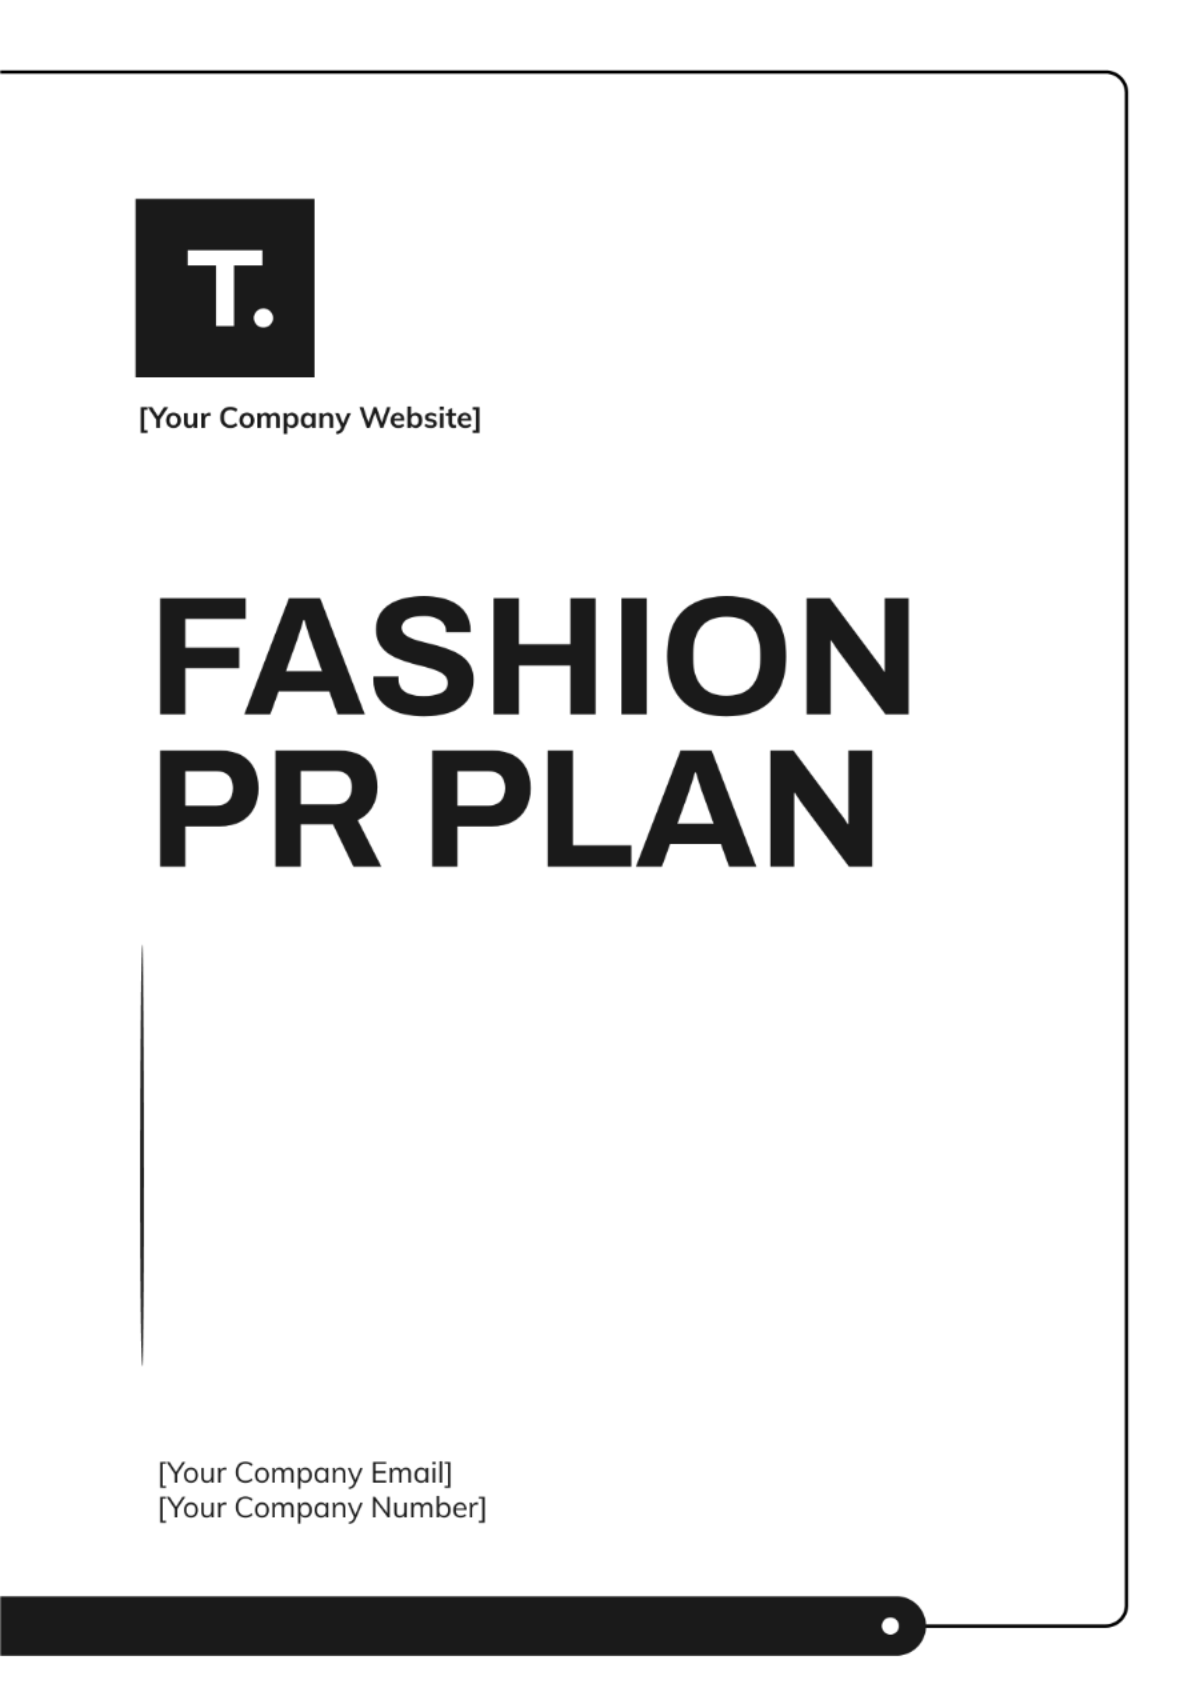 Fashion PR Plan Template